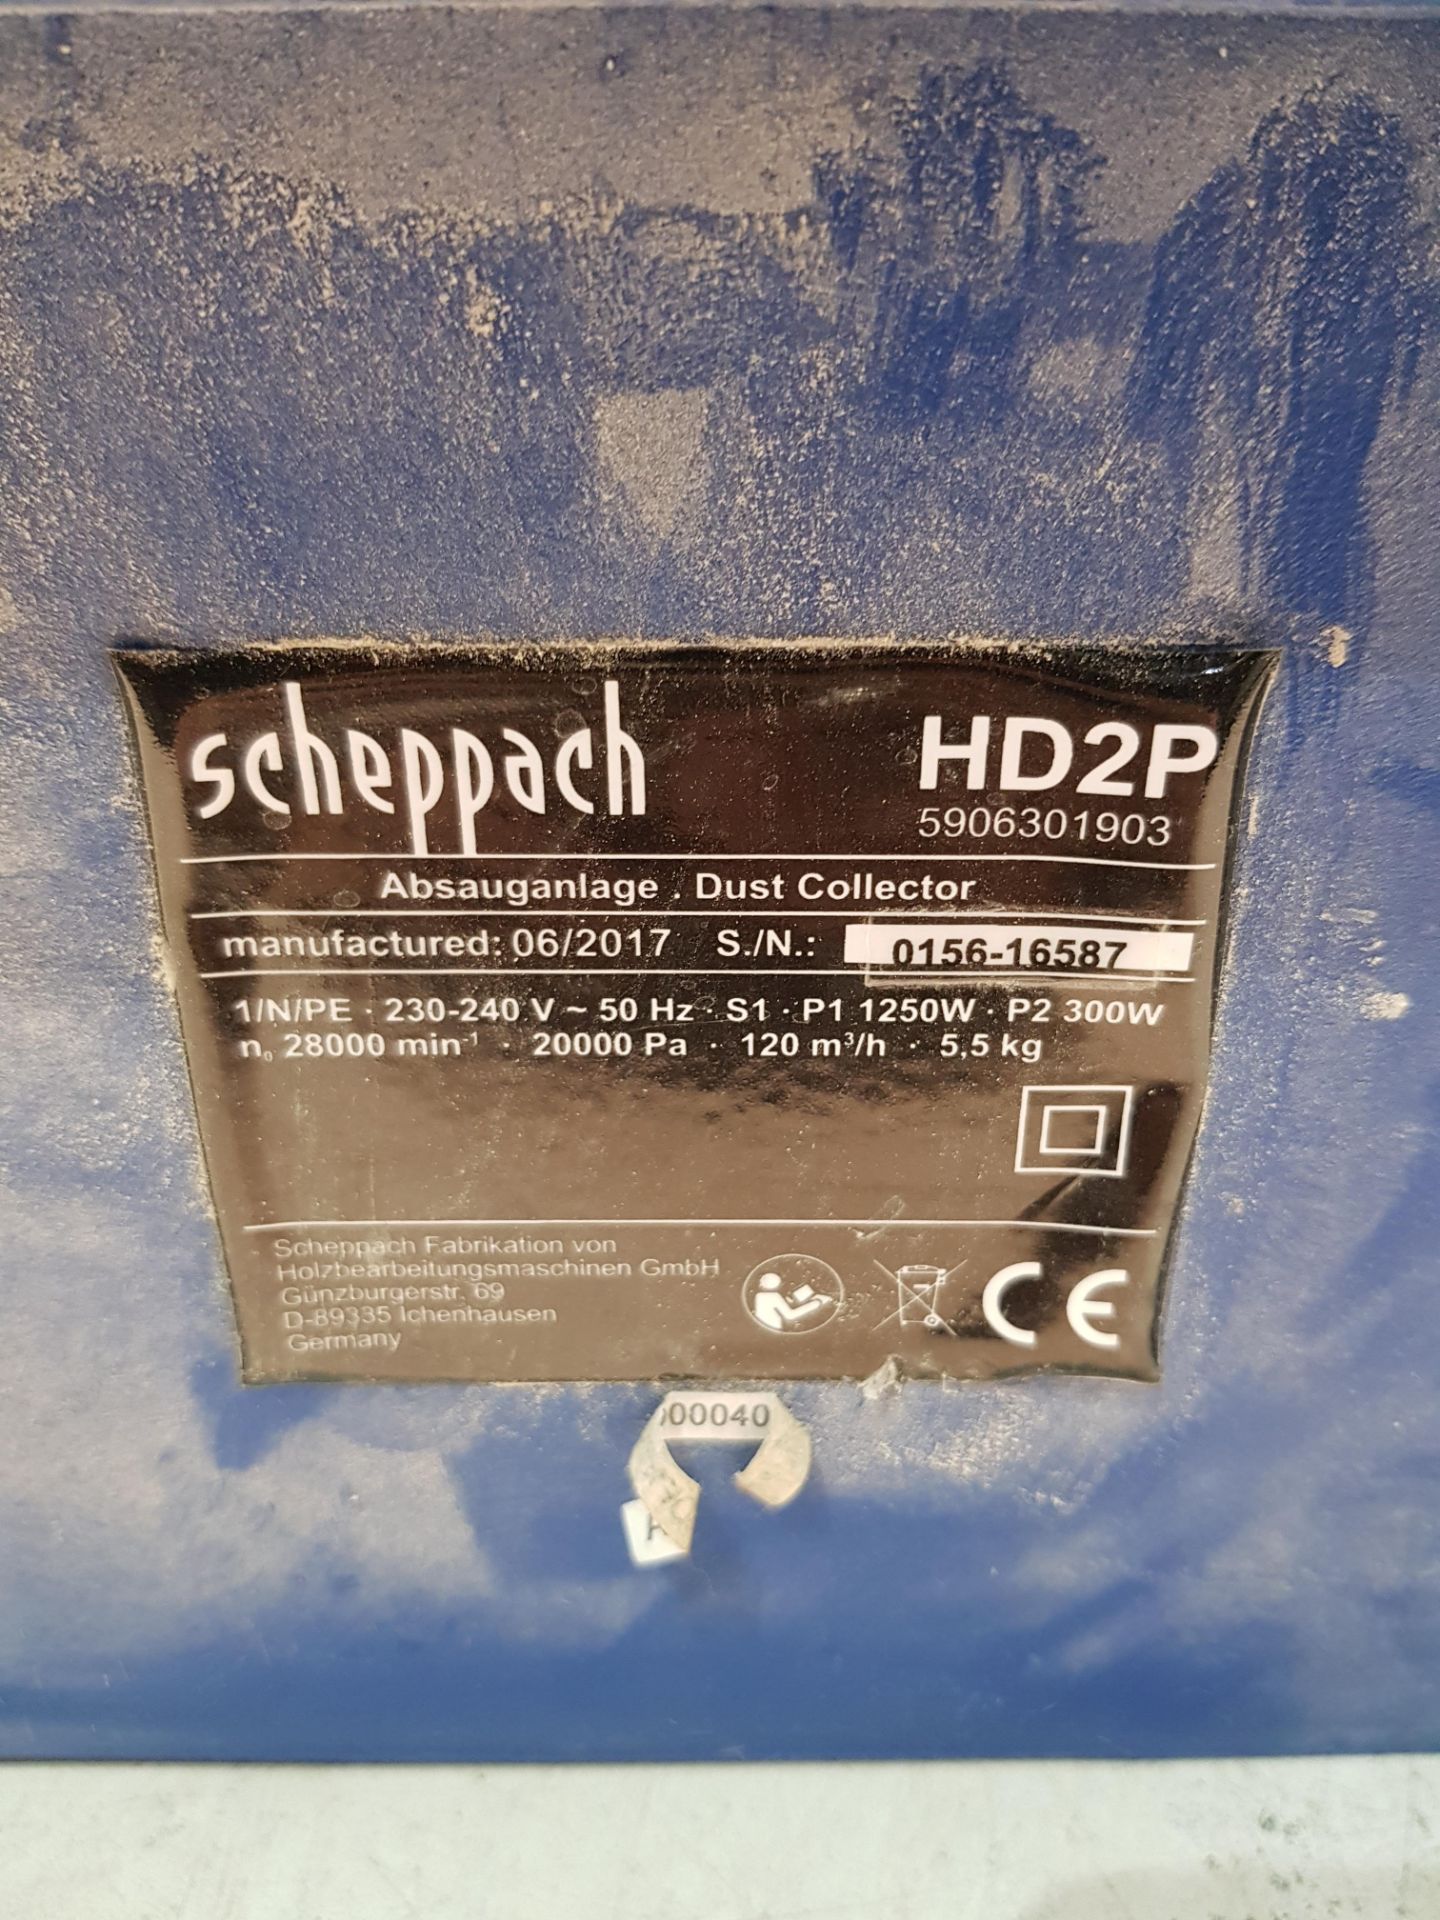 Scheppach Dust Collector S/N: 0156-16587 - Image 3 of 3